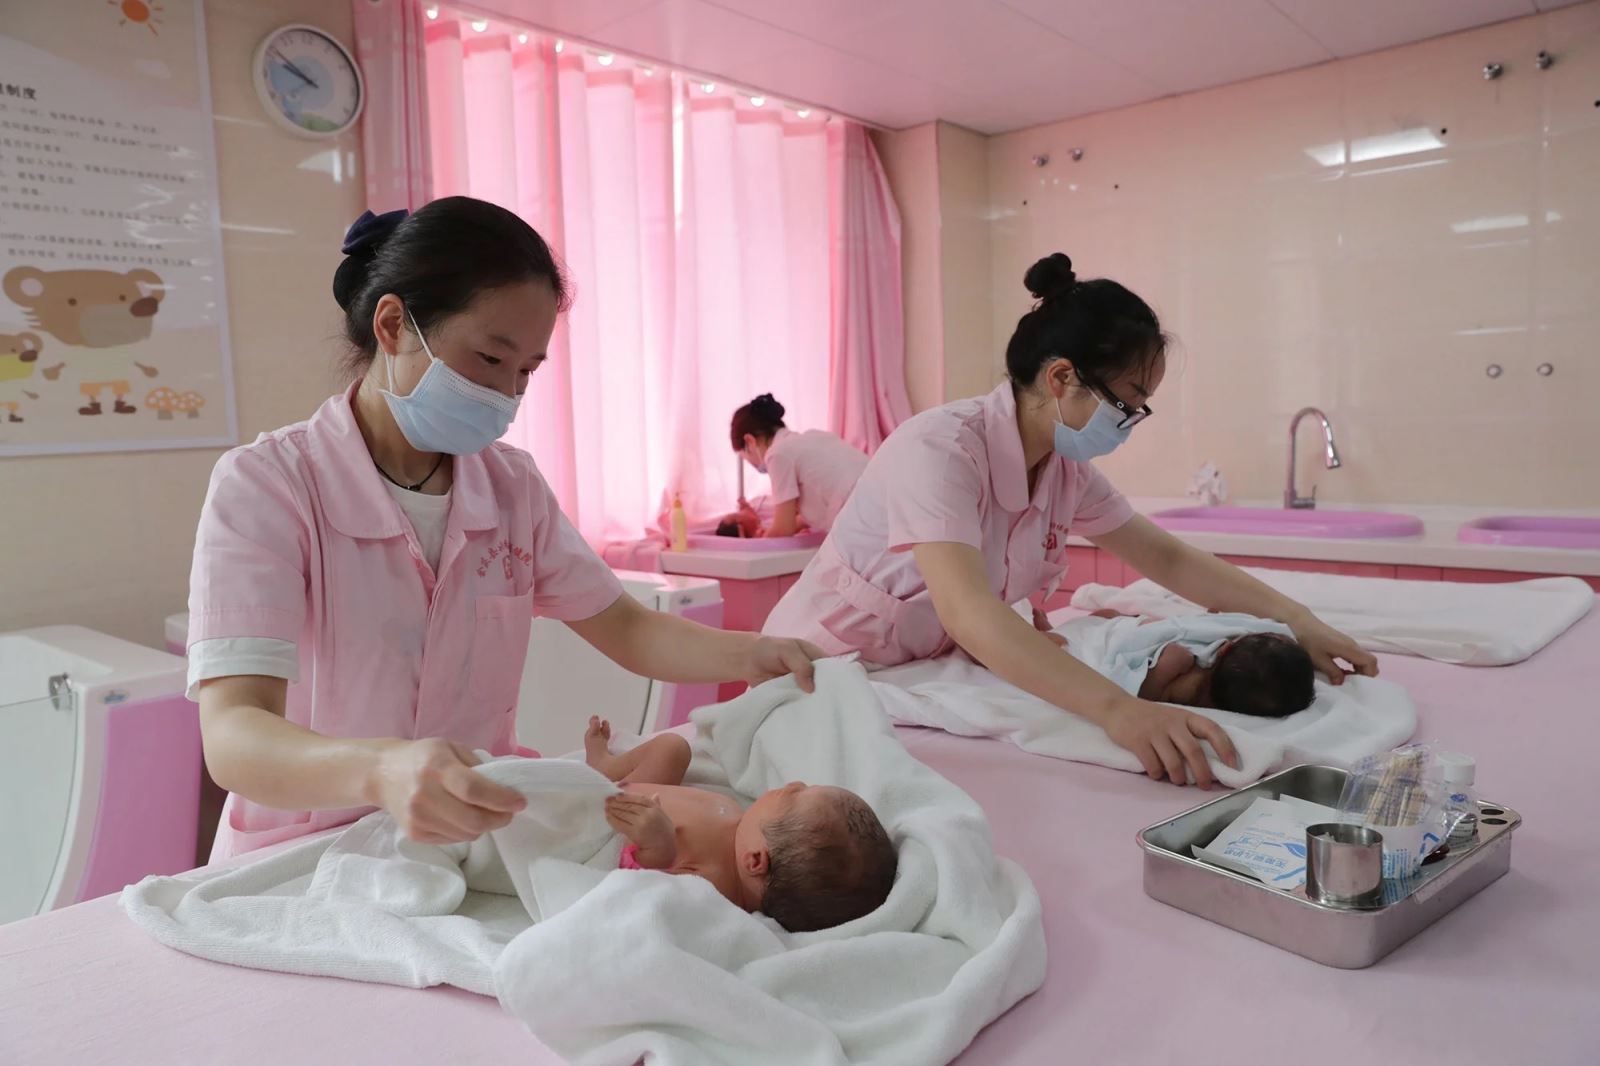 Trung Quốc cho phép người dân làm việc tại nhà, hỗ trợ nhà ở để tăng tỷ lệ sinh - Ảnh 2.